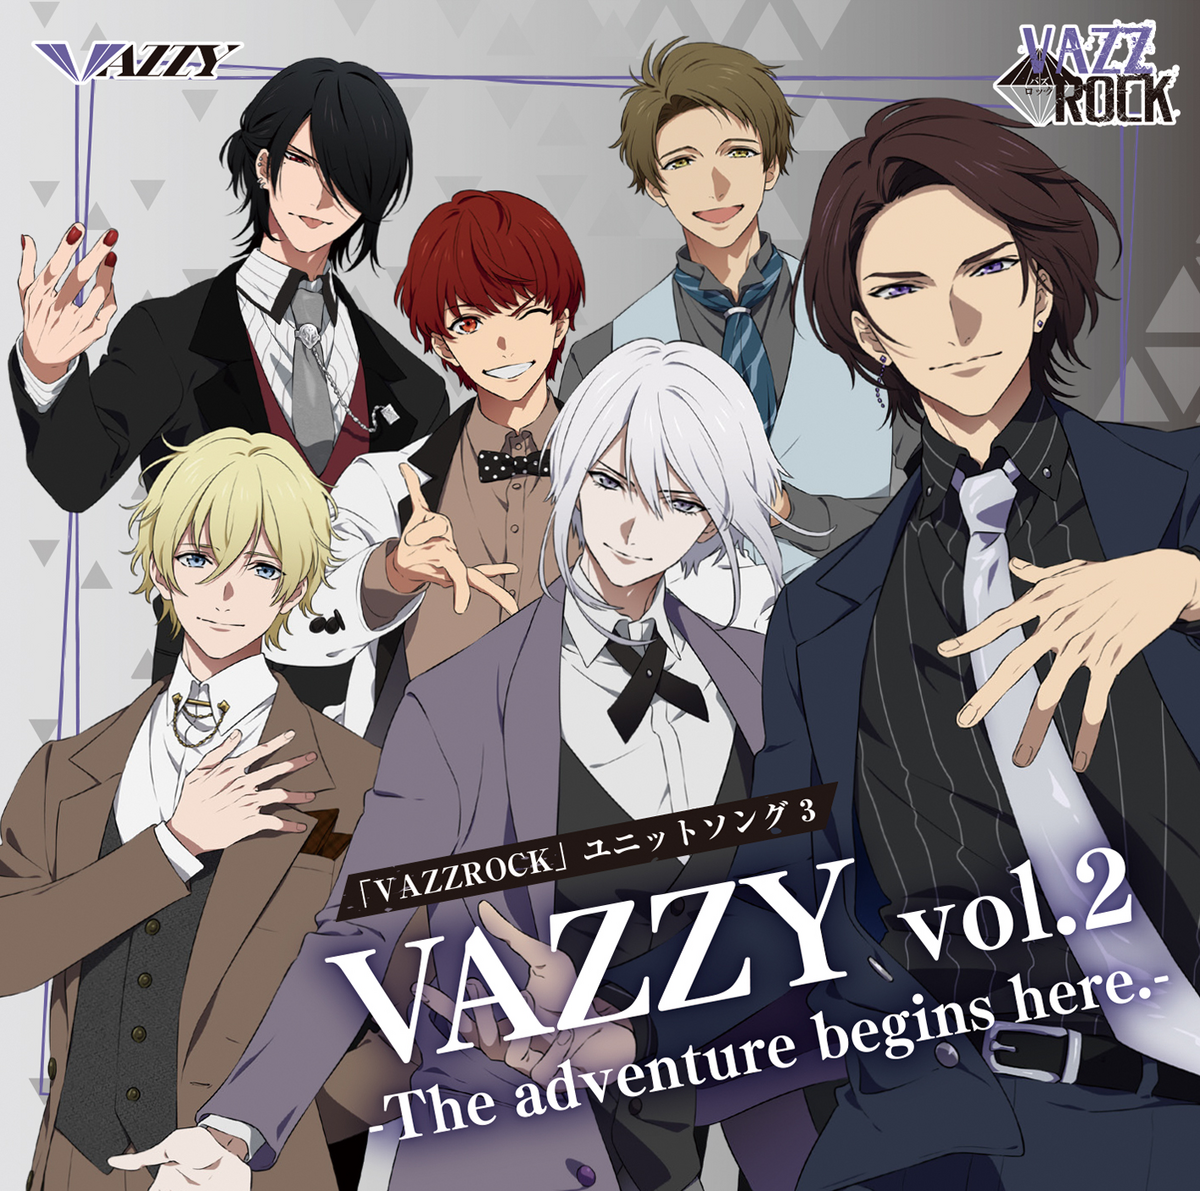 VAZZY vol.2 -The adventure begins here.- | Tsukipro Wiki | Fandom